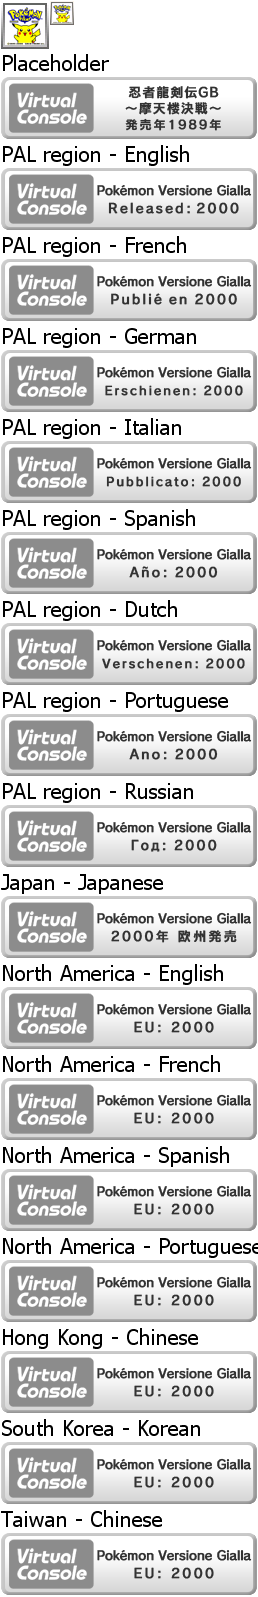 Virtual Console - Pokémon Versione Gialla